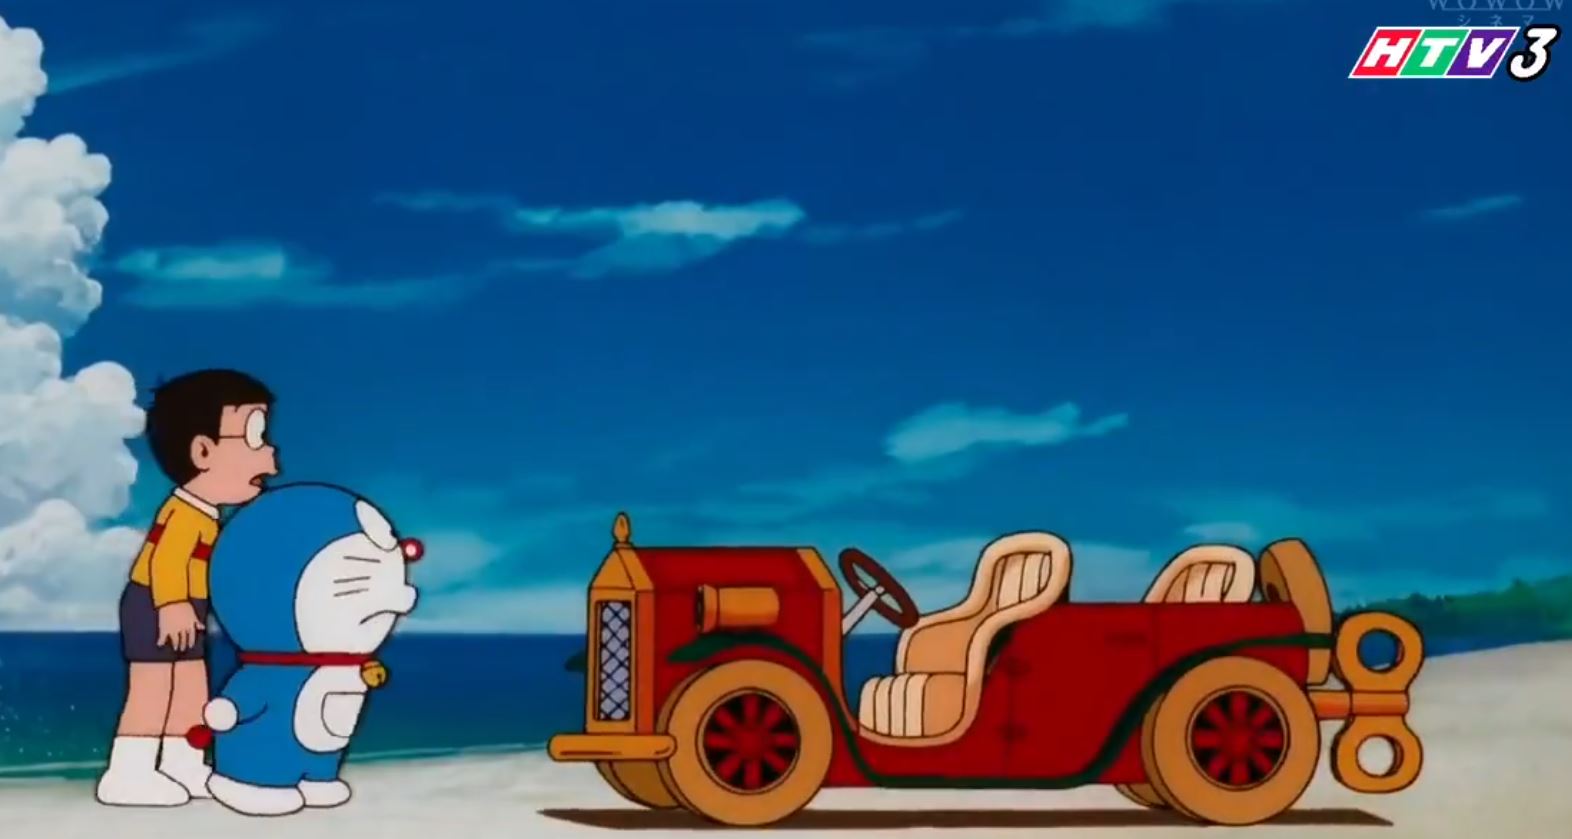 Doraemon Tập DÀI Nobita và Mê Cung Thiếc HTV3 Lồng Tiếng, Nobita và Mê Cung Thiếc lồng tiếng, Doraemon Nobita và Mê Cung Thiếc lồng tiếng, Hoạt hình Doraemon tập dài, Doraemon tập dài Nobita và Mê Cung Thiếc, Xem Nobita và Mê Cung Thiếc thuyết minh, Tập Full Nobita và Mê Cung Thiếc lồng tiếng, Hoạt hình Doraemon Nobita và Mê Cung Thiếc, Hoạt hình Doraemon truyện dài, Xem hoạt hình Doraemon tập dài, Hoạt hình Doraemon, Nobita và Mê Cung Thiếc HTV3, Tuyển tập hoạt hình Doraemon, Phim hoạt hình Doraemon tập dài, Tổng hợp clip hoạt hình Doraemon